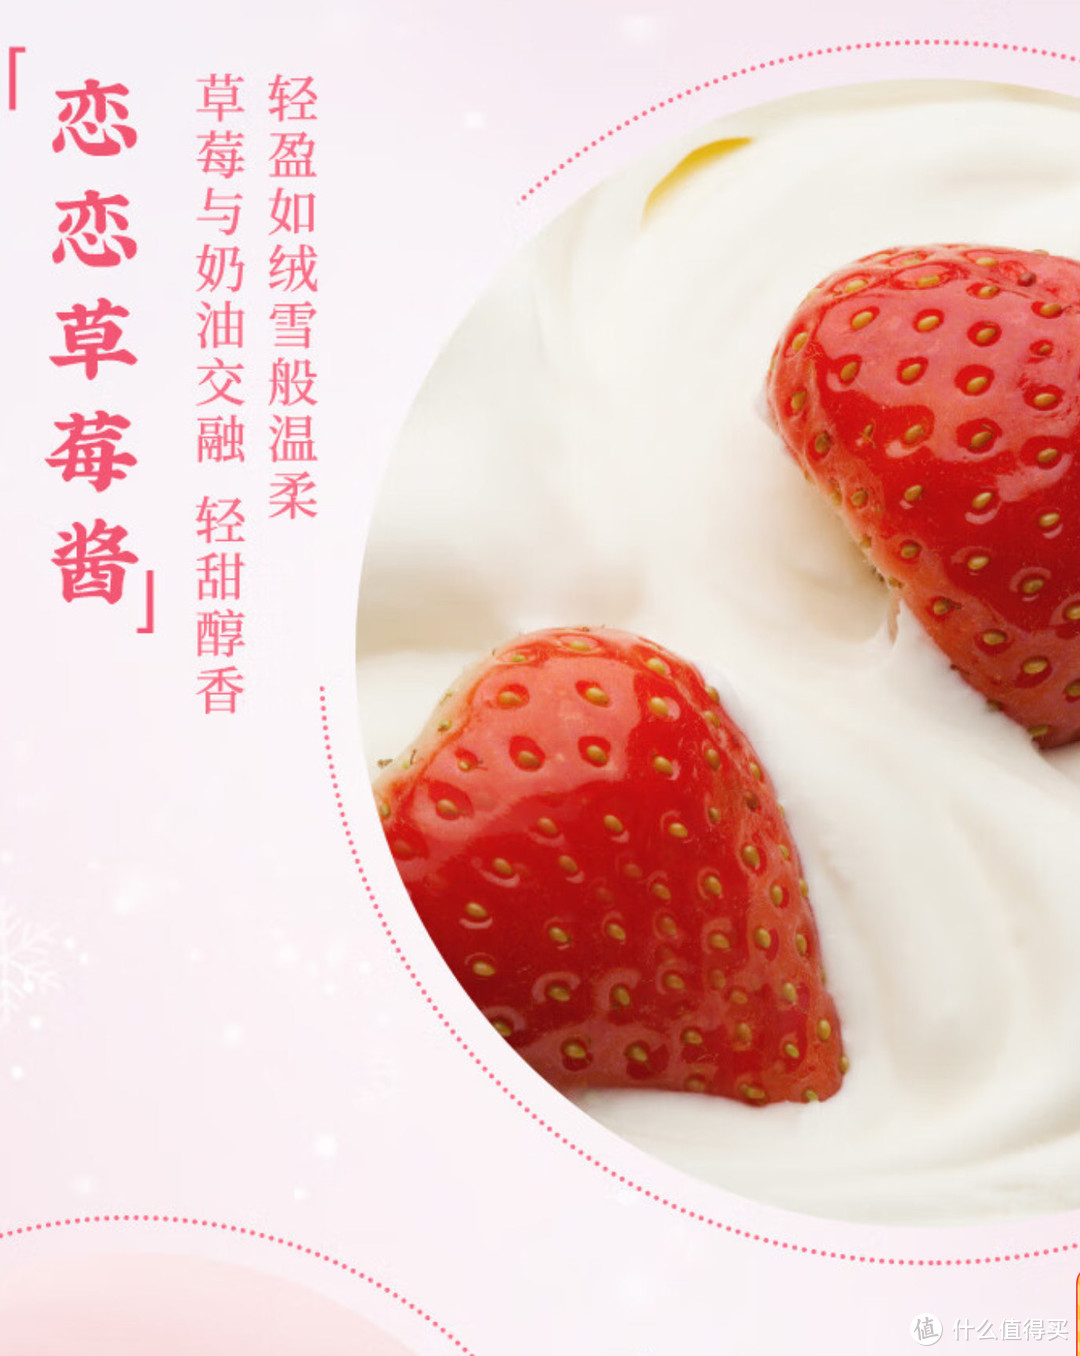 春季第一口甜品：千层雪和路雪雪棒草莓芝士慕斯口味冰淇淋